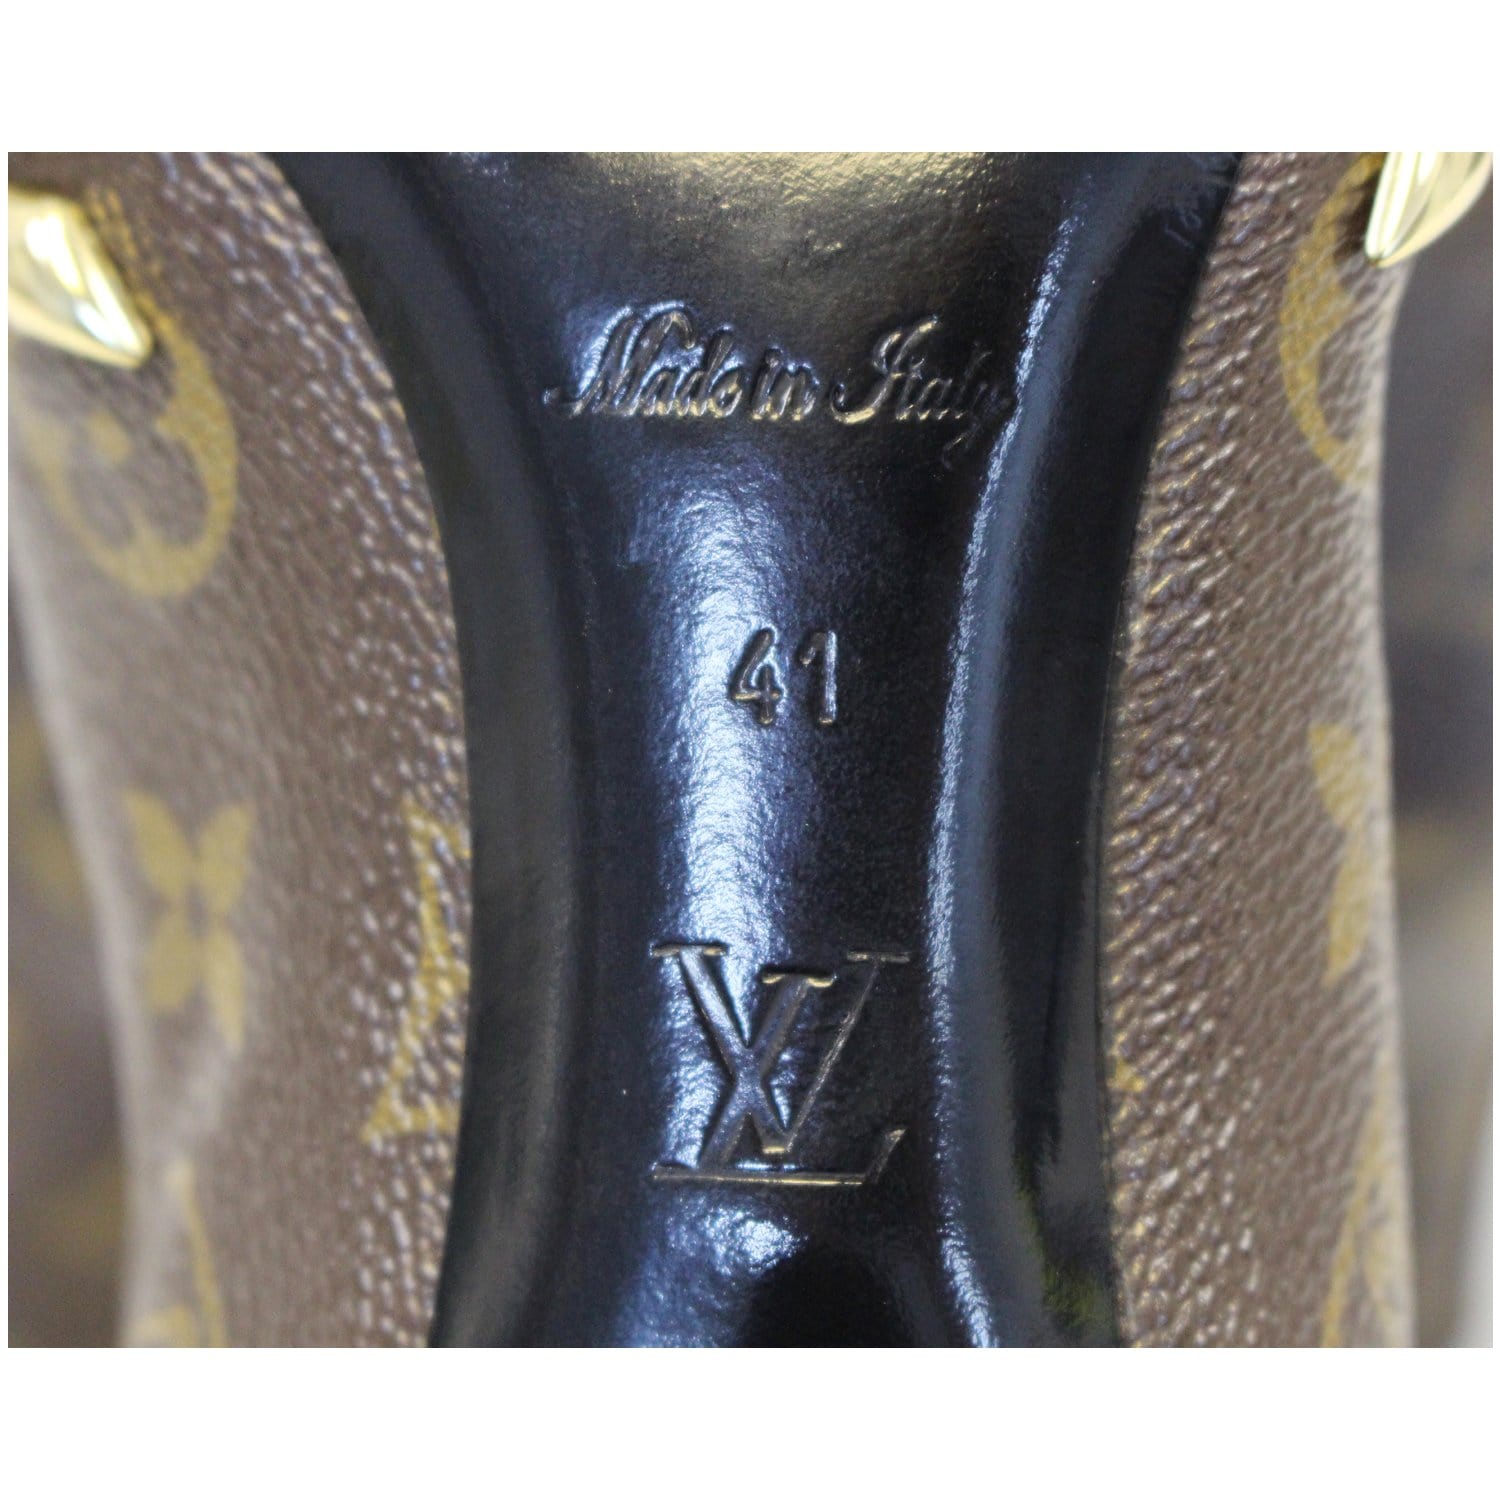 NEW Louis Vuitton Monogram ELDORADO Ankle Boot Shoes EURO 38, US 7, 7.5